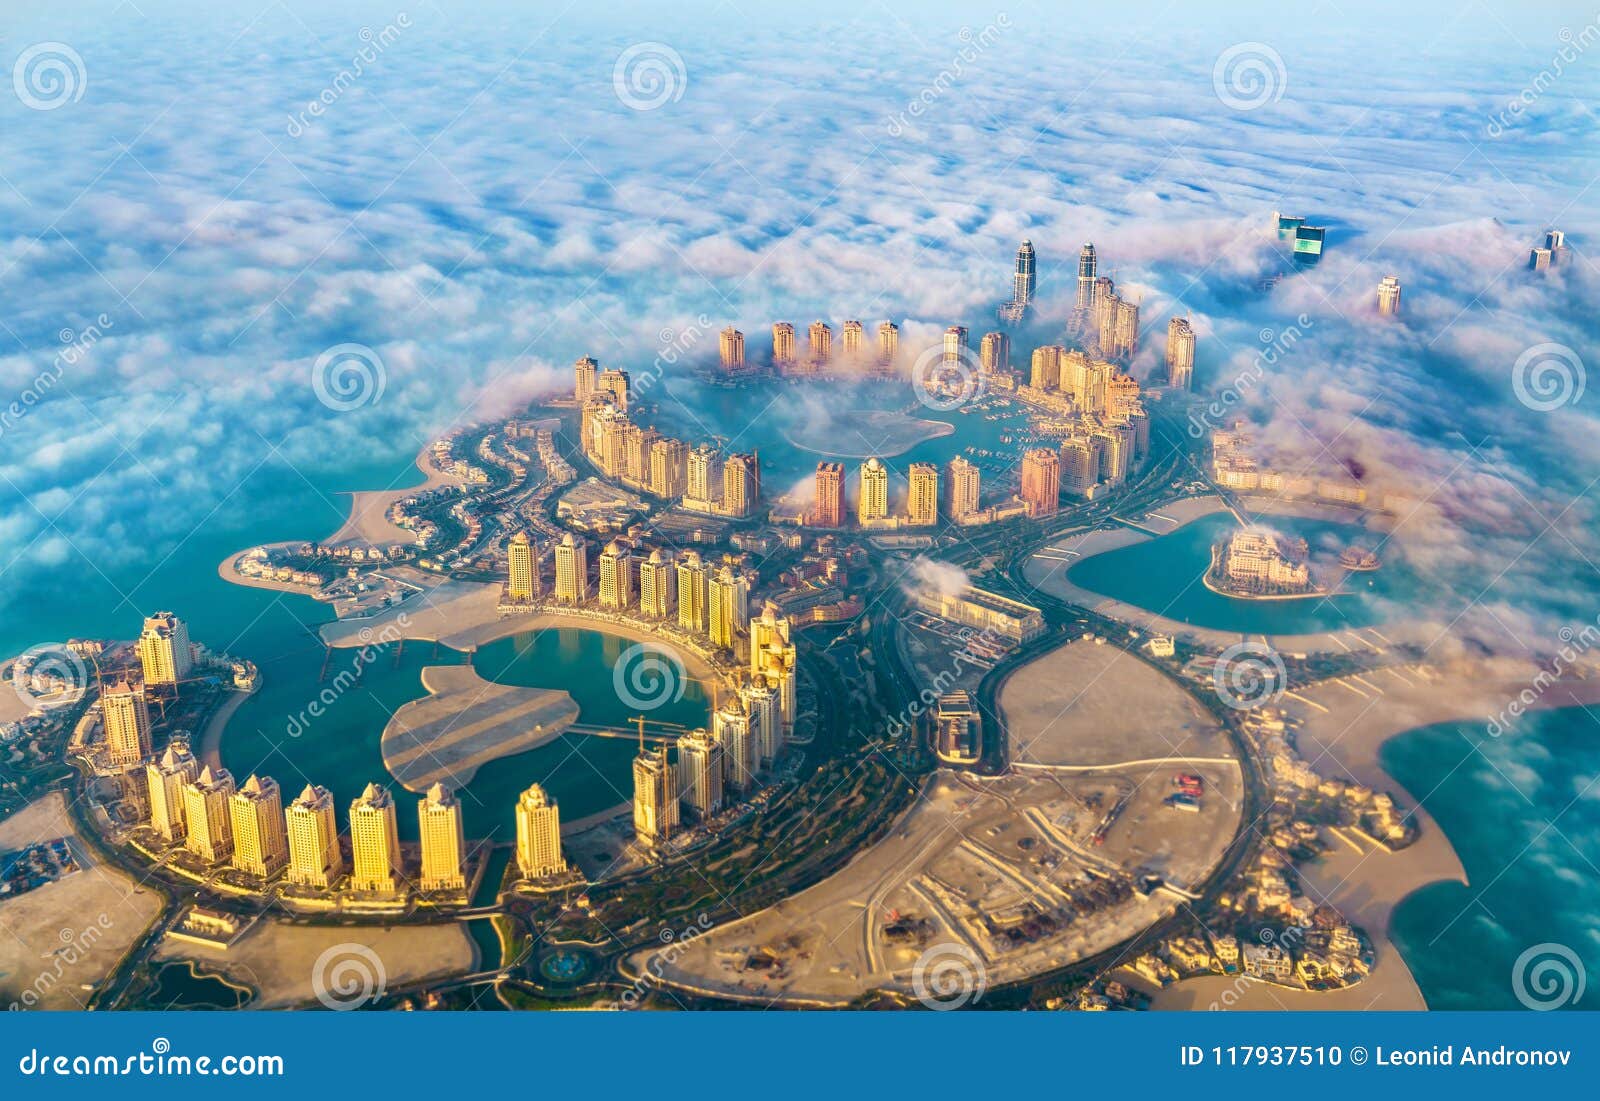 Vista Aérea De La Isla De Perla-Qatar En Doha a Través De La Niebla De La  Mañana - Qatar, El Golfo Pérsico Foto de archivo - Imagen de cielo, aéreo:  117937510